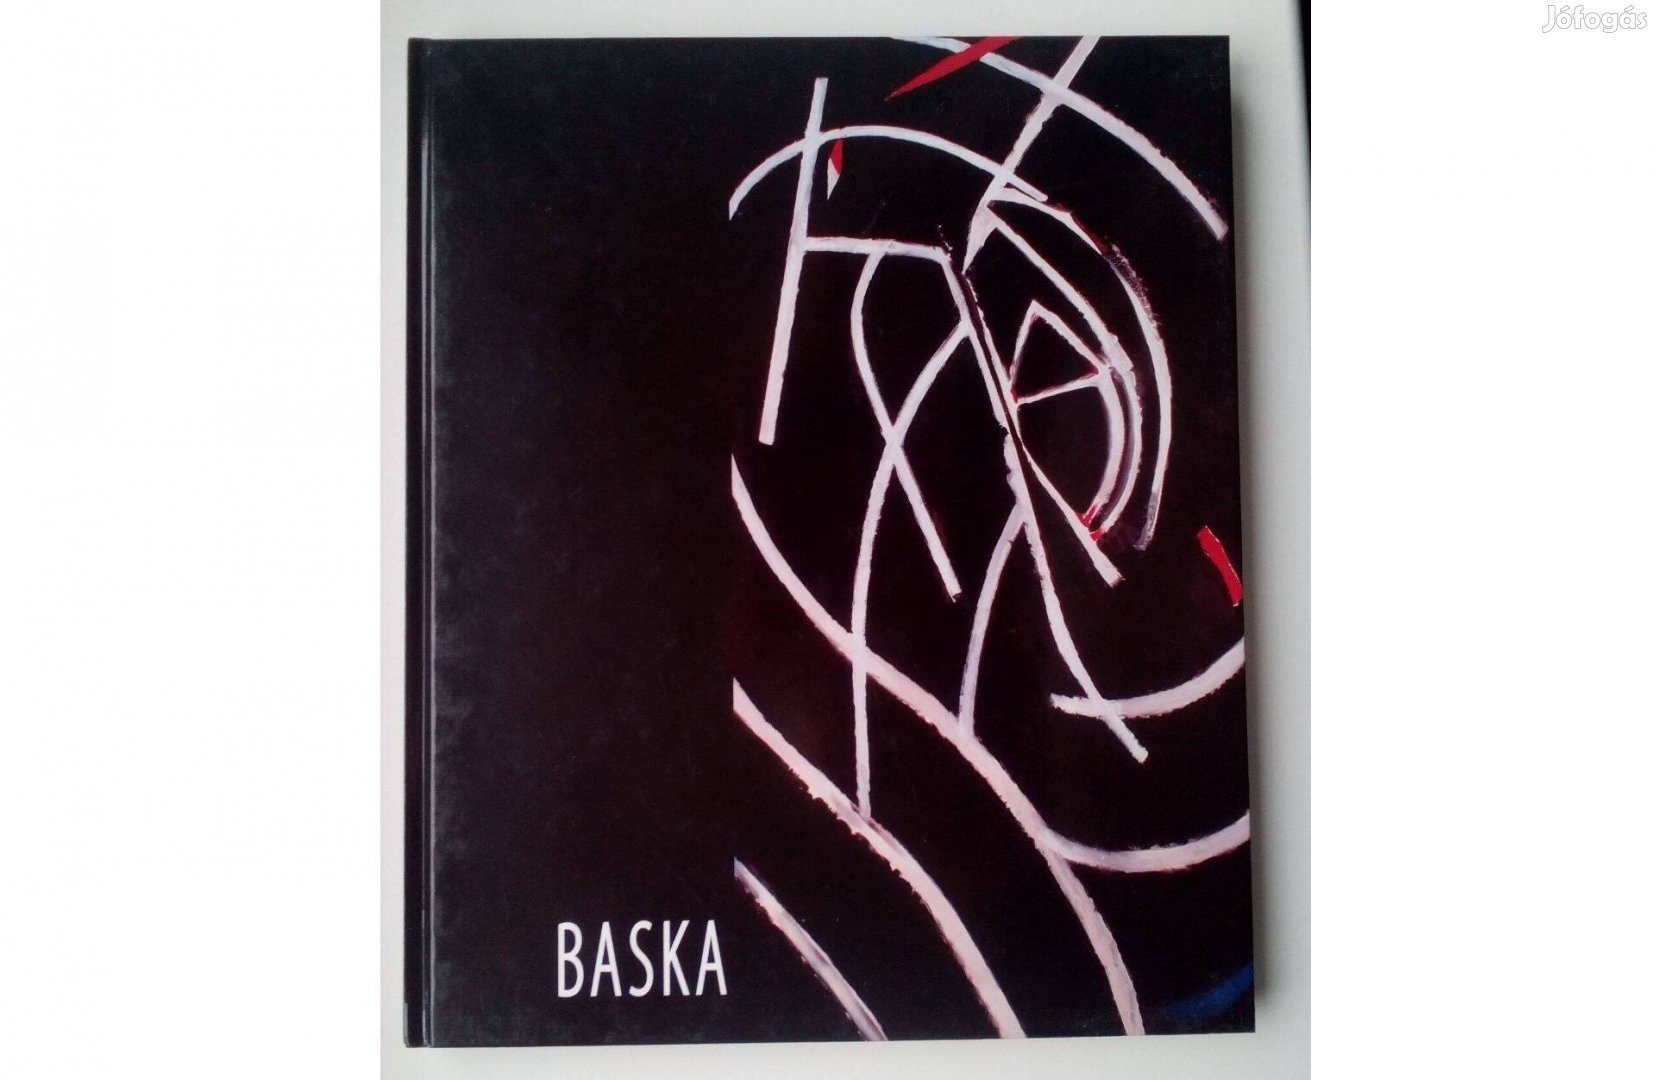 Képzőművészet, Baska József album, könyv kemény kötésben, színes fotók